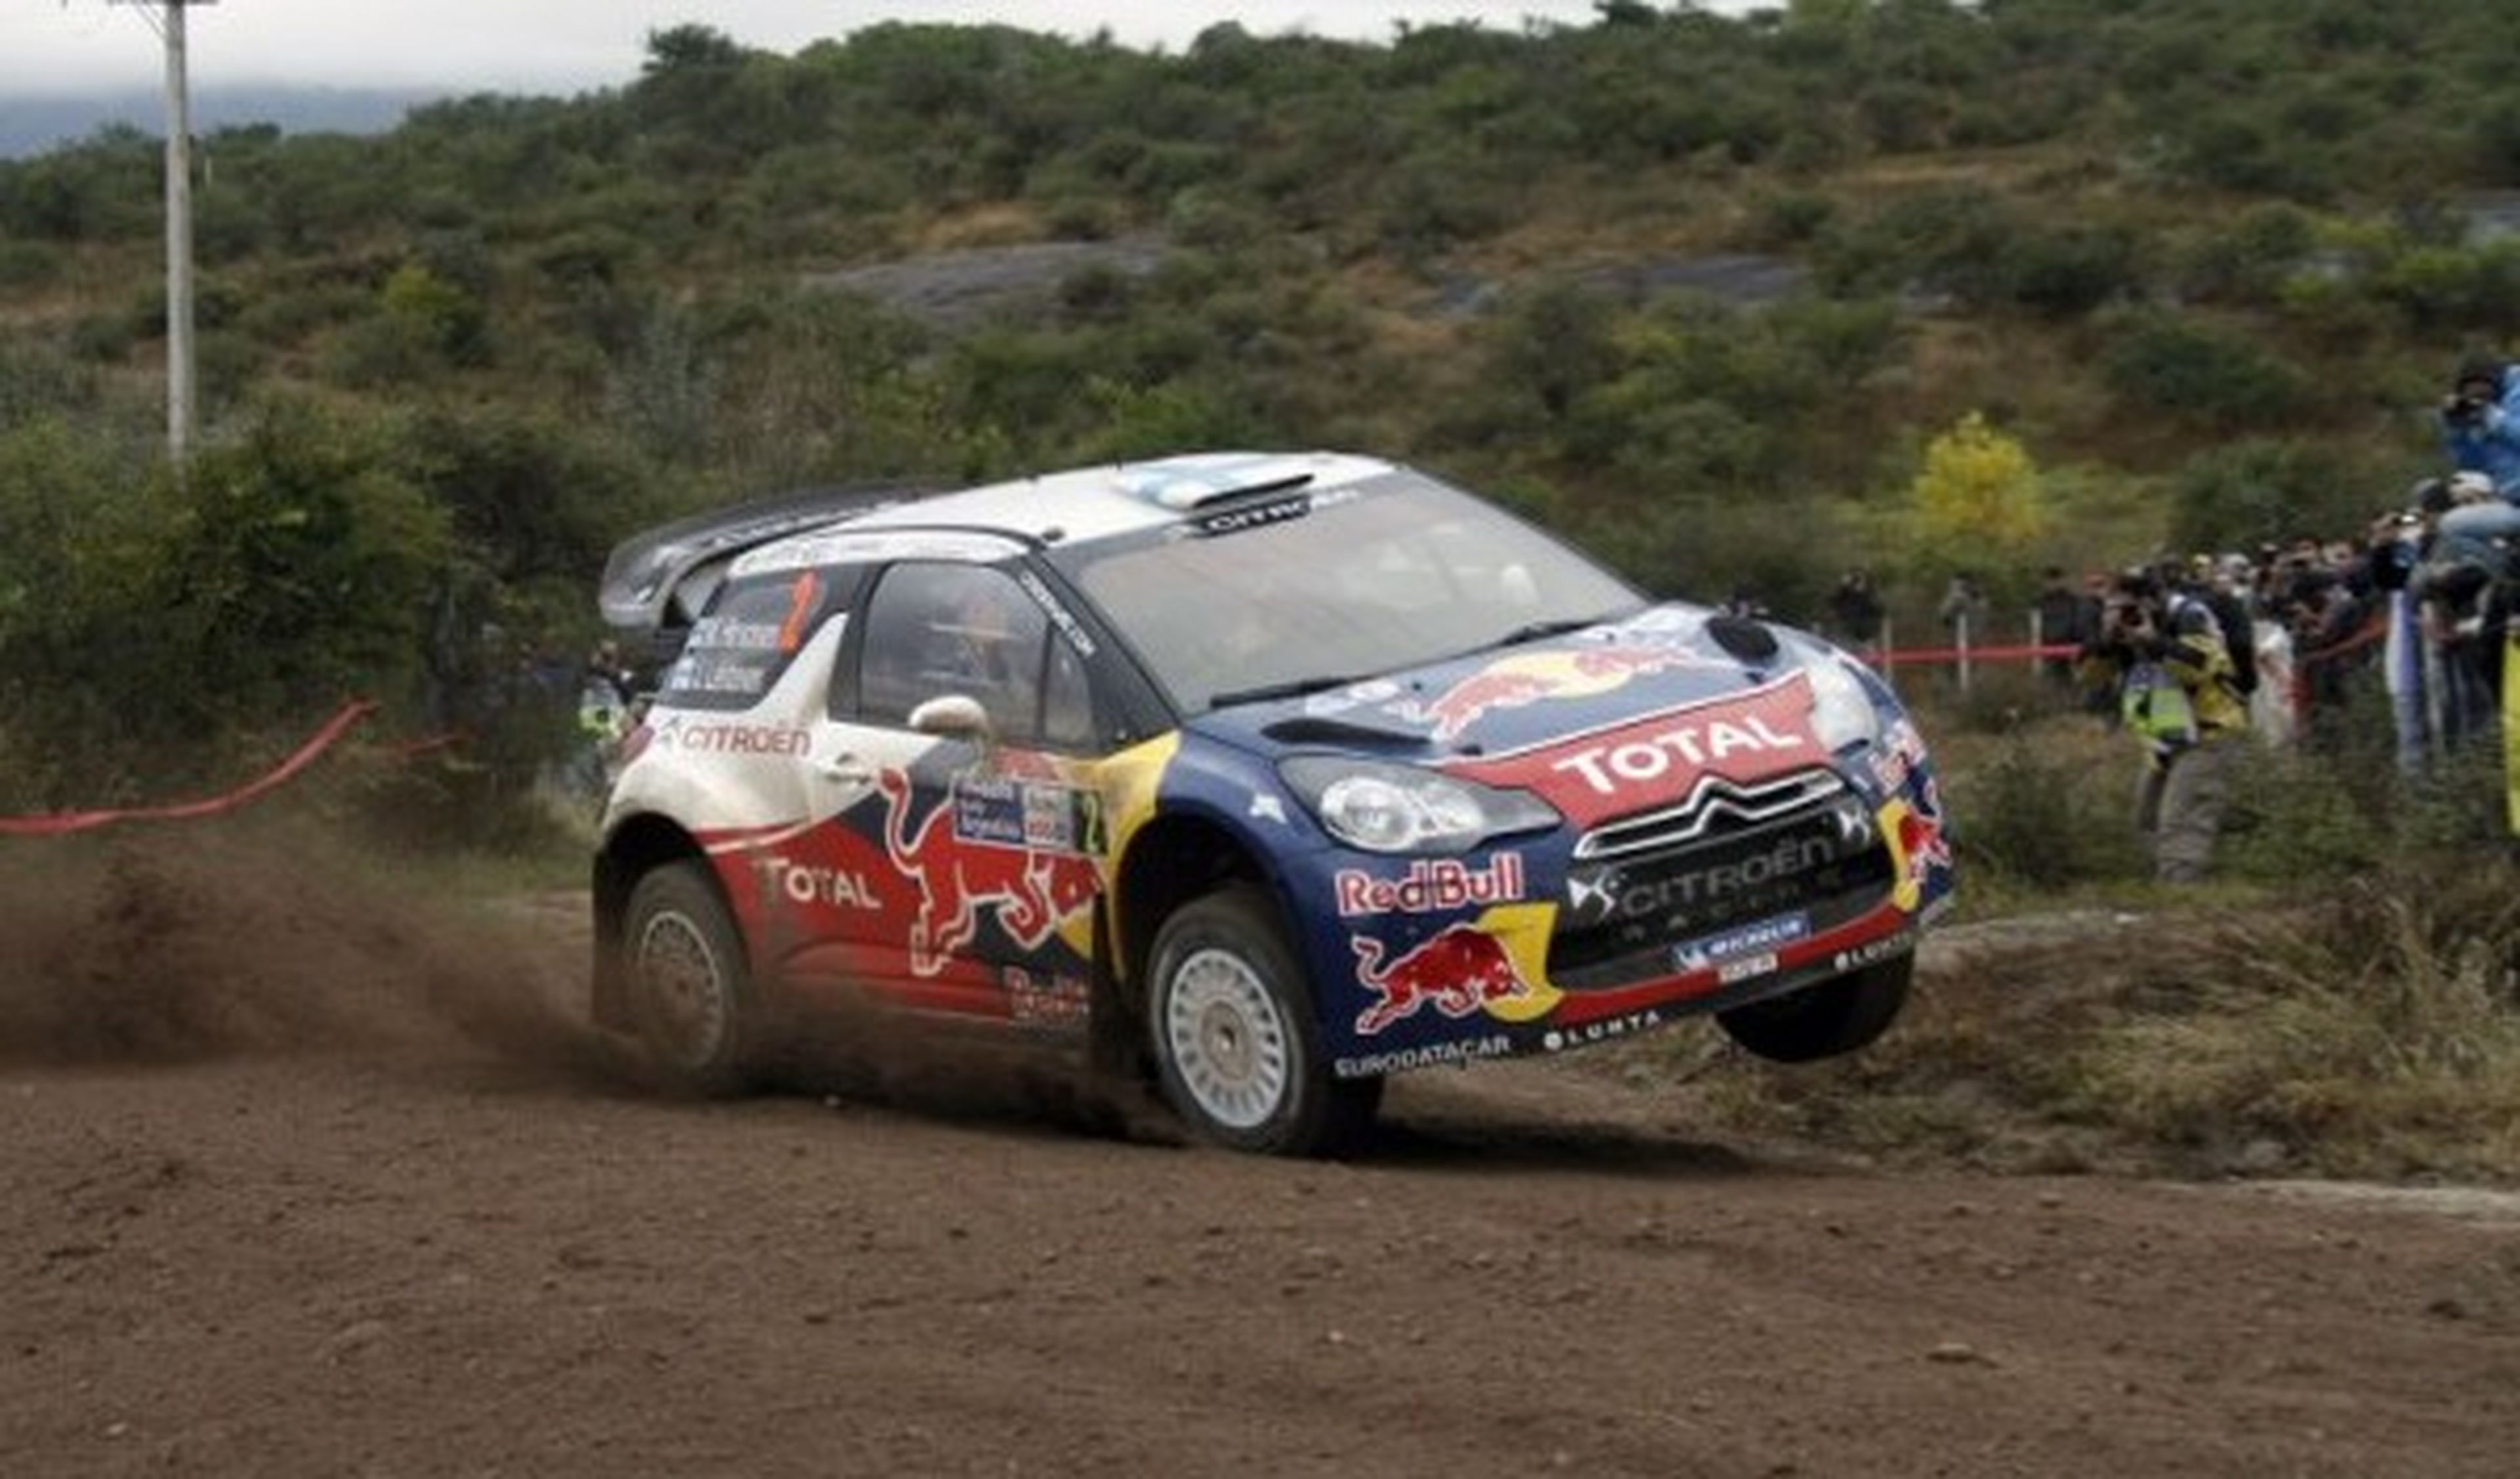 Loeb lidera el Rally de Argentina 2012, Solberg abandona